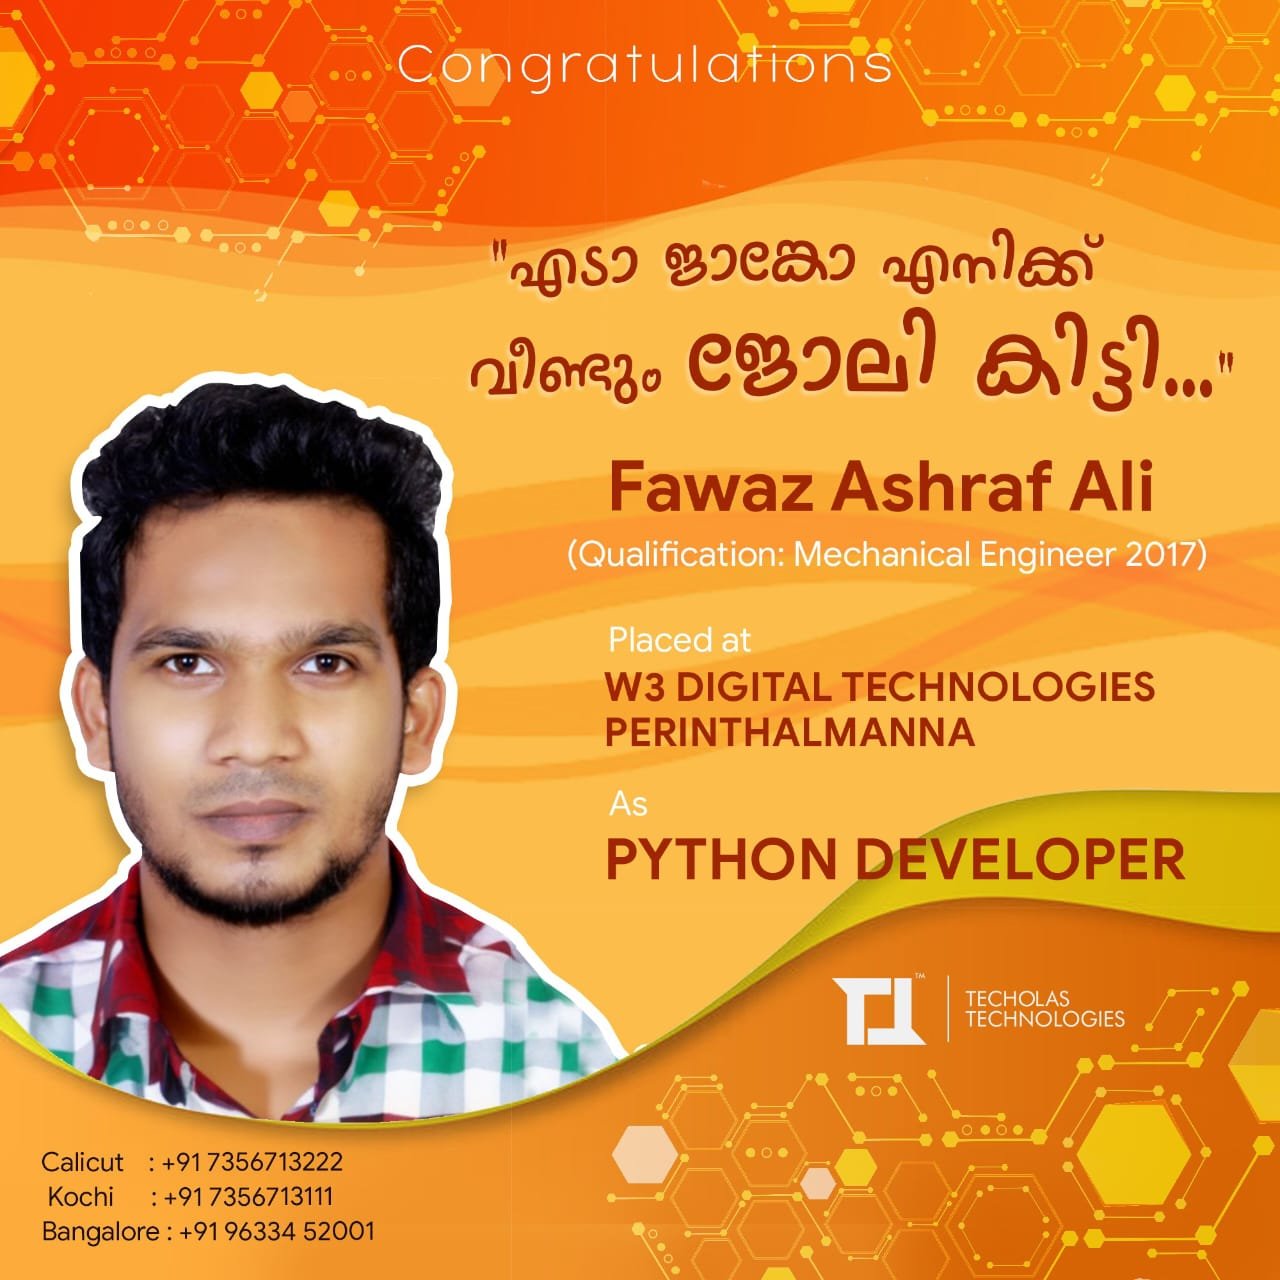 Techolas Placements - Gayathri Menon placed at Tech Mahindra as Software Engineer